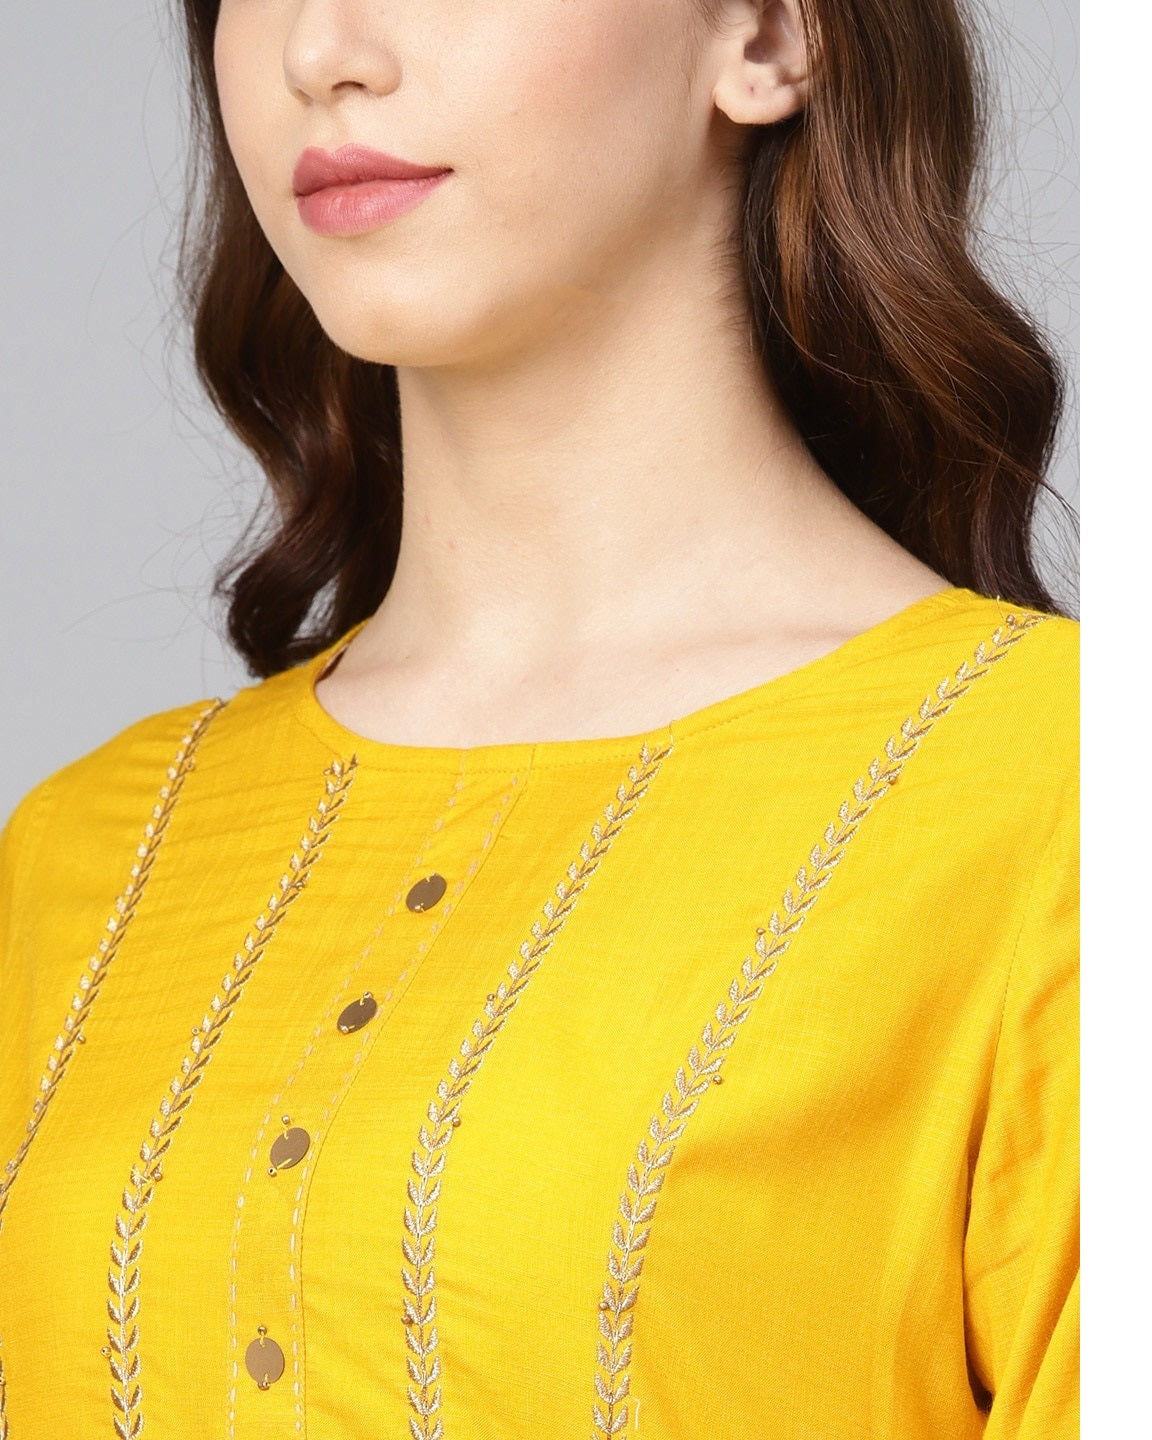 Women's Mustard Yellow Yoke Design Straight Kurta - Meeranshi